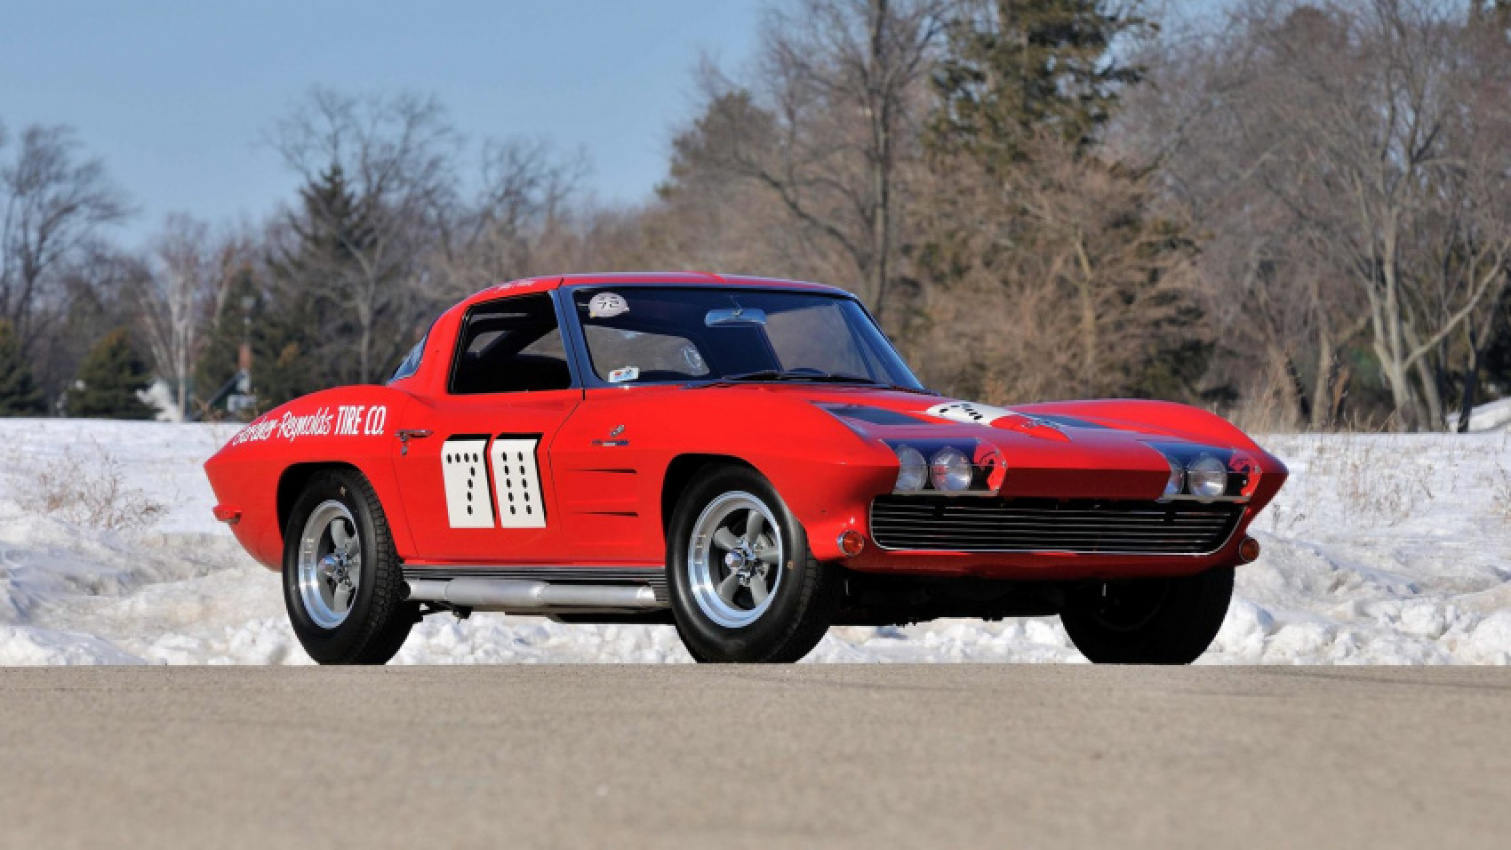 autos, cars, classic cars, 1963 chevy corvette sting ray, chevy corvette, chevy, 1963 chevy corvette sting ray “7 11” race car